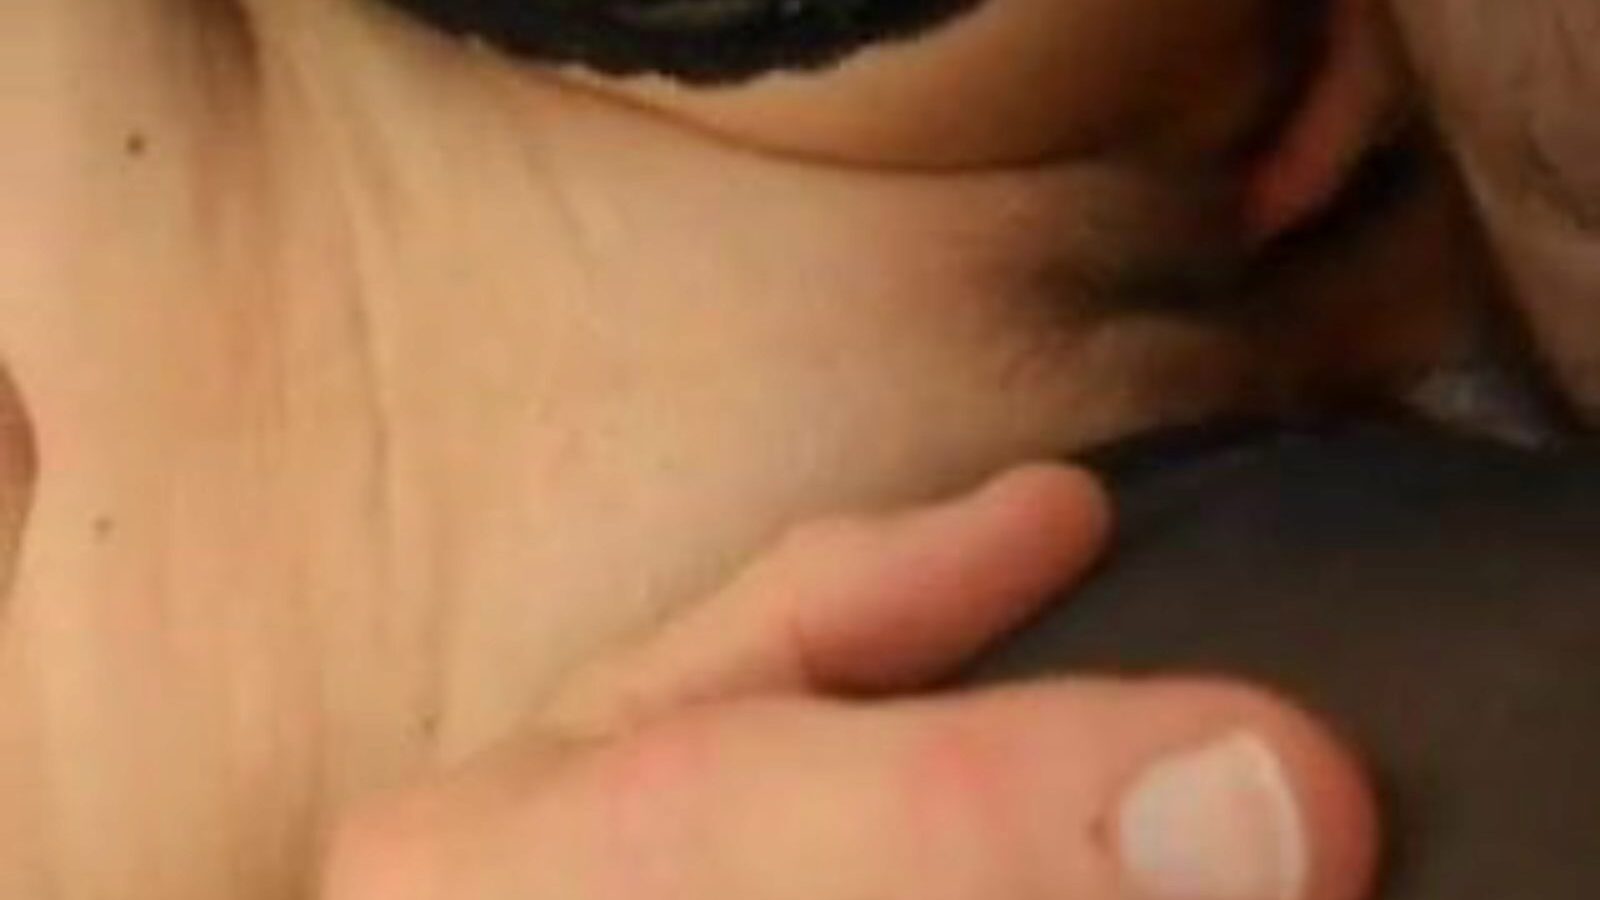 cum on pussylips: nuevo en netflix porn video bb - xhamster mira cum en pussylips tube joroba clip gratis en xhamster, con el grupo más sexy de nuevos en netflix difunde el coño y muestra escenas de videos porno